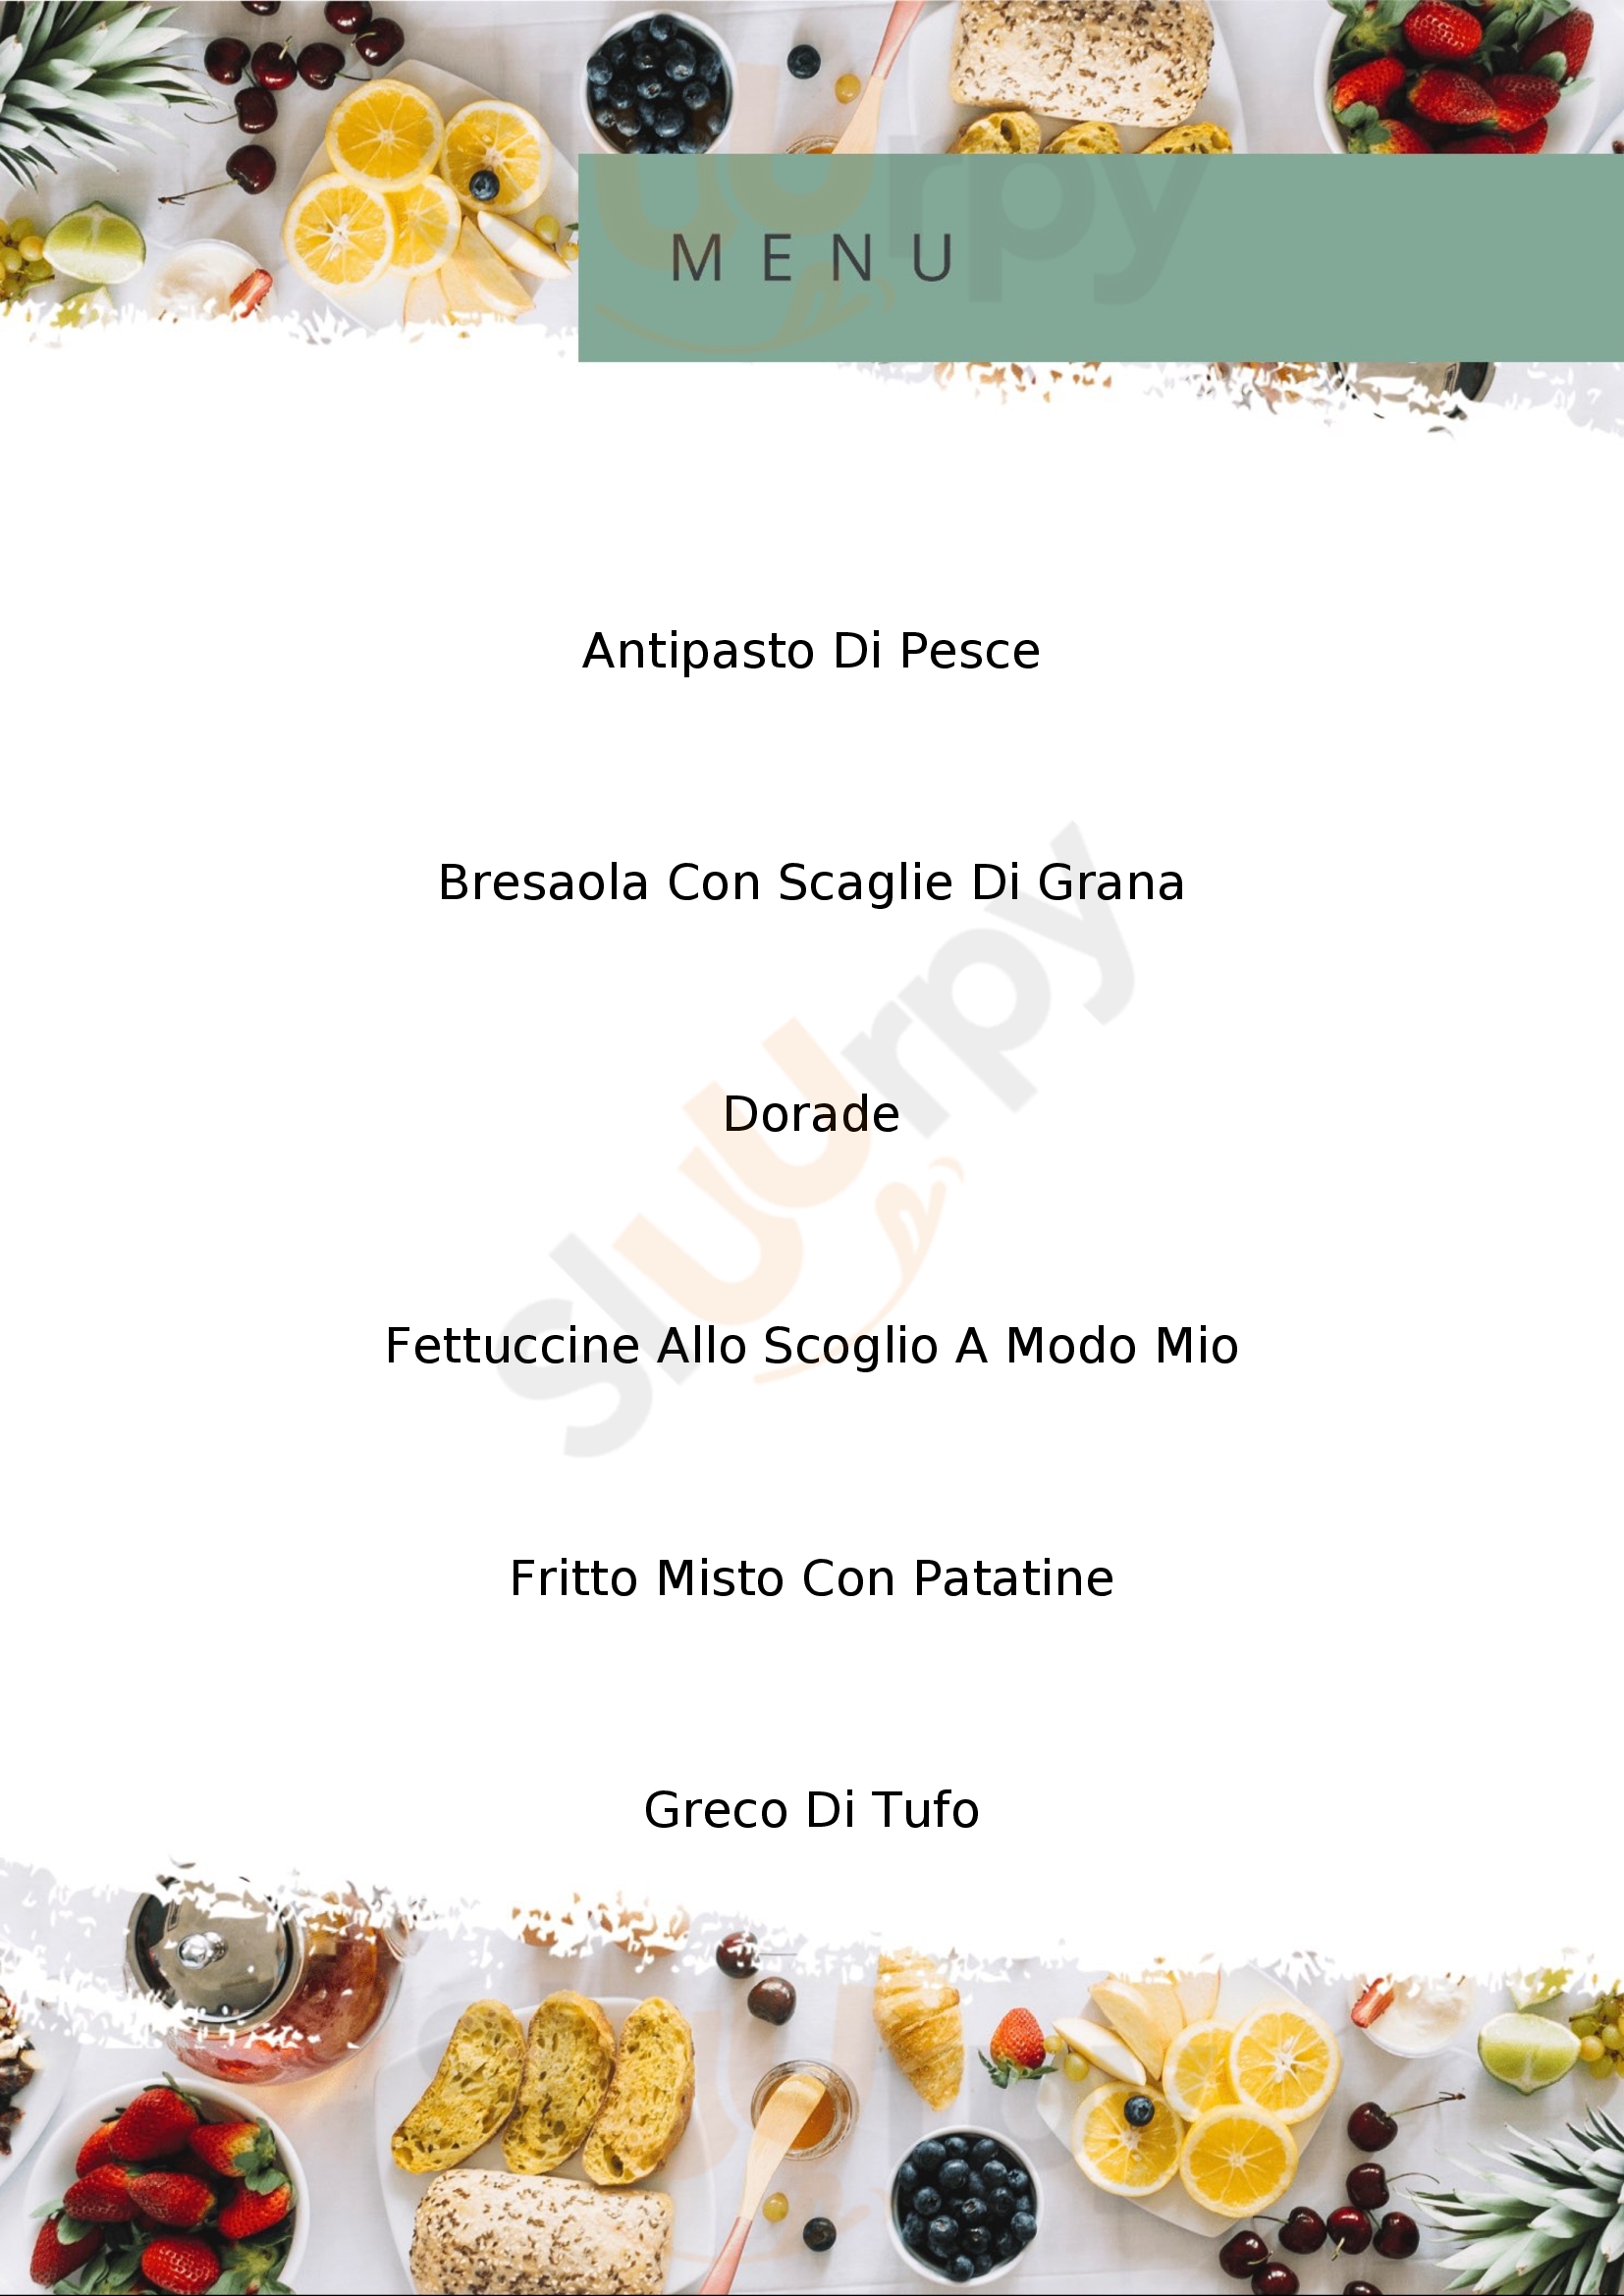 Trattoria Pizzera Tramonti Costa D Amalfi Buguggiate menù 1 pagina